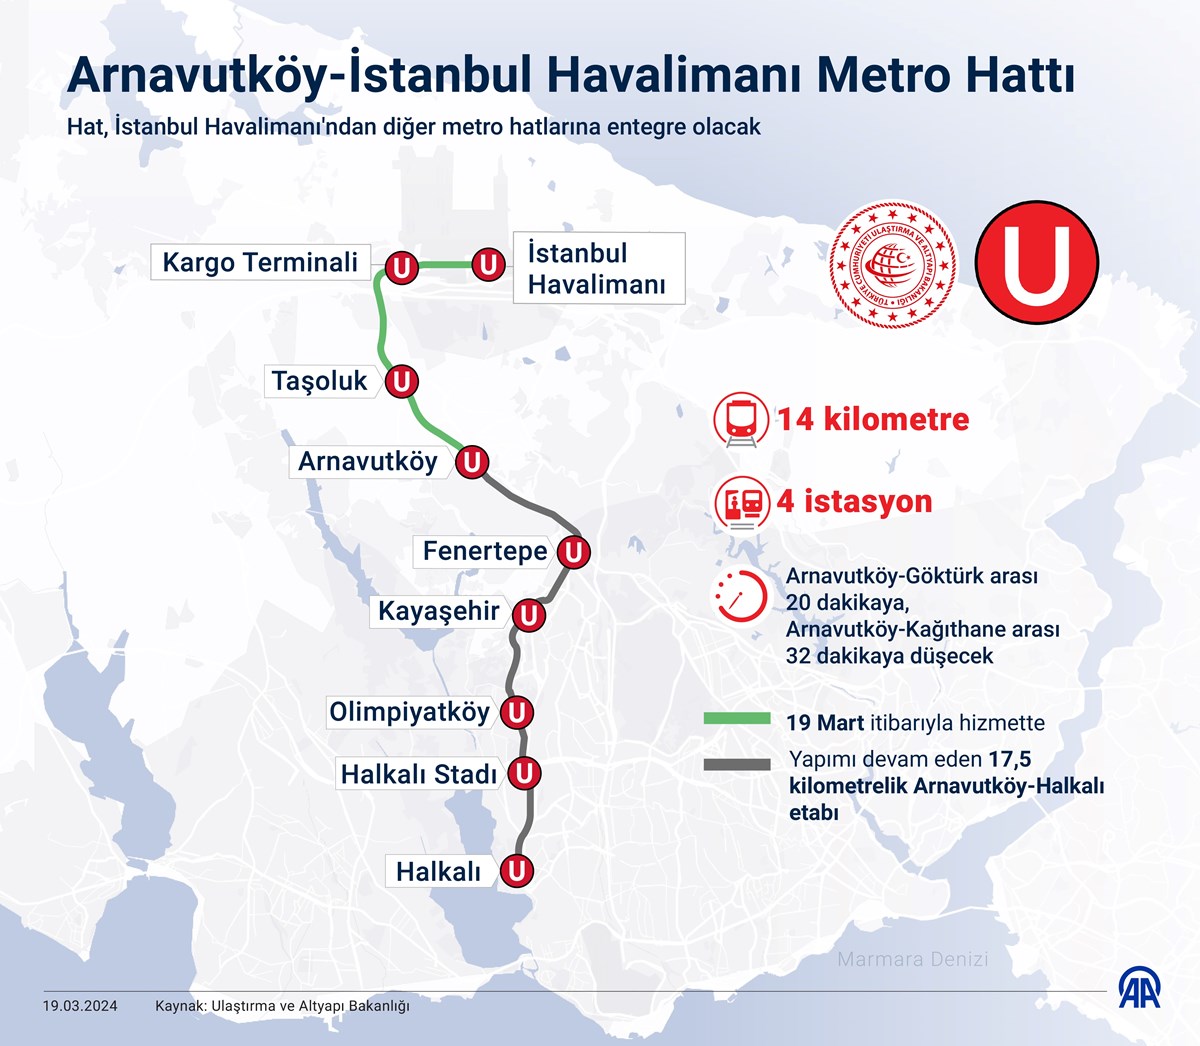 Arnavutköy-İstanbul Havalimanı Metro Hatta (İnfografik:AA)